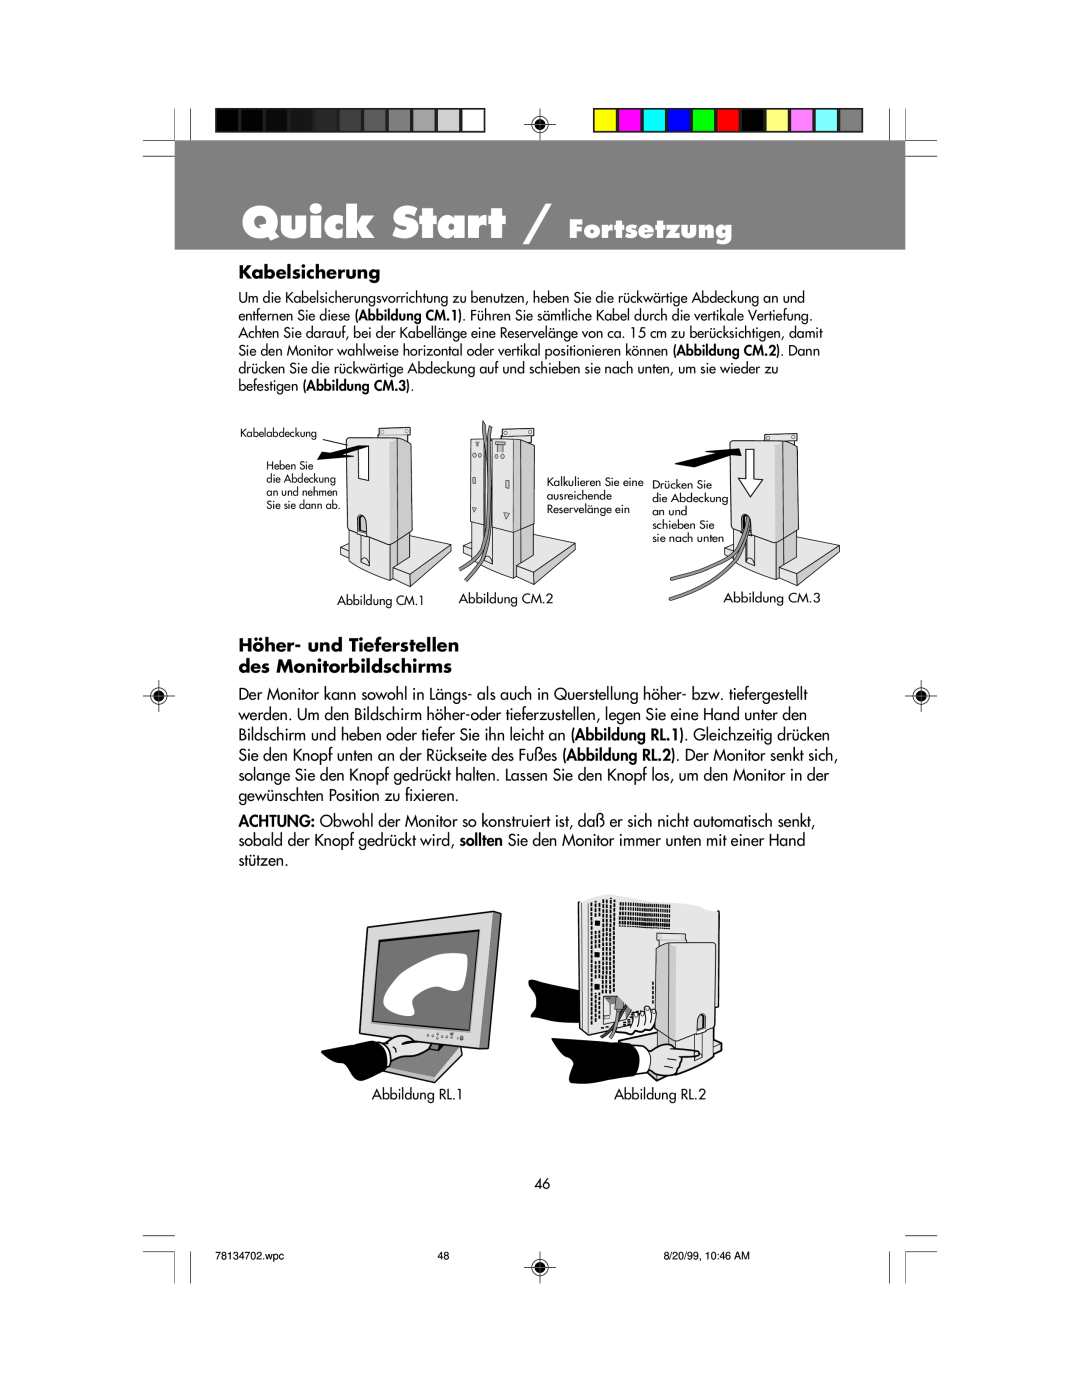 NEC LCD1510+ user manual Quick Start / Fortsetzung, Kabelsicherung, Höher- und Tieferstellen des Monitorbildschirms 